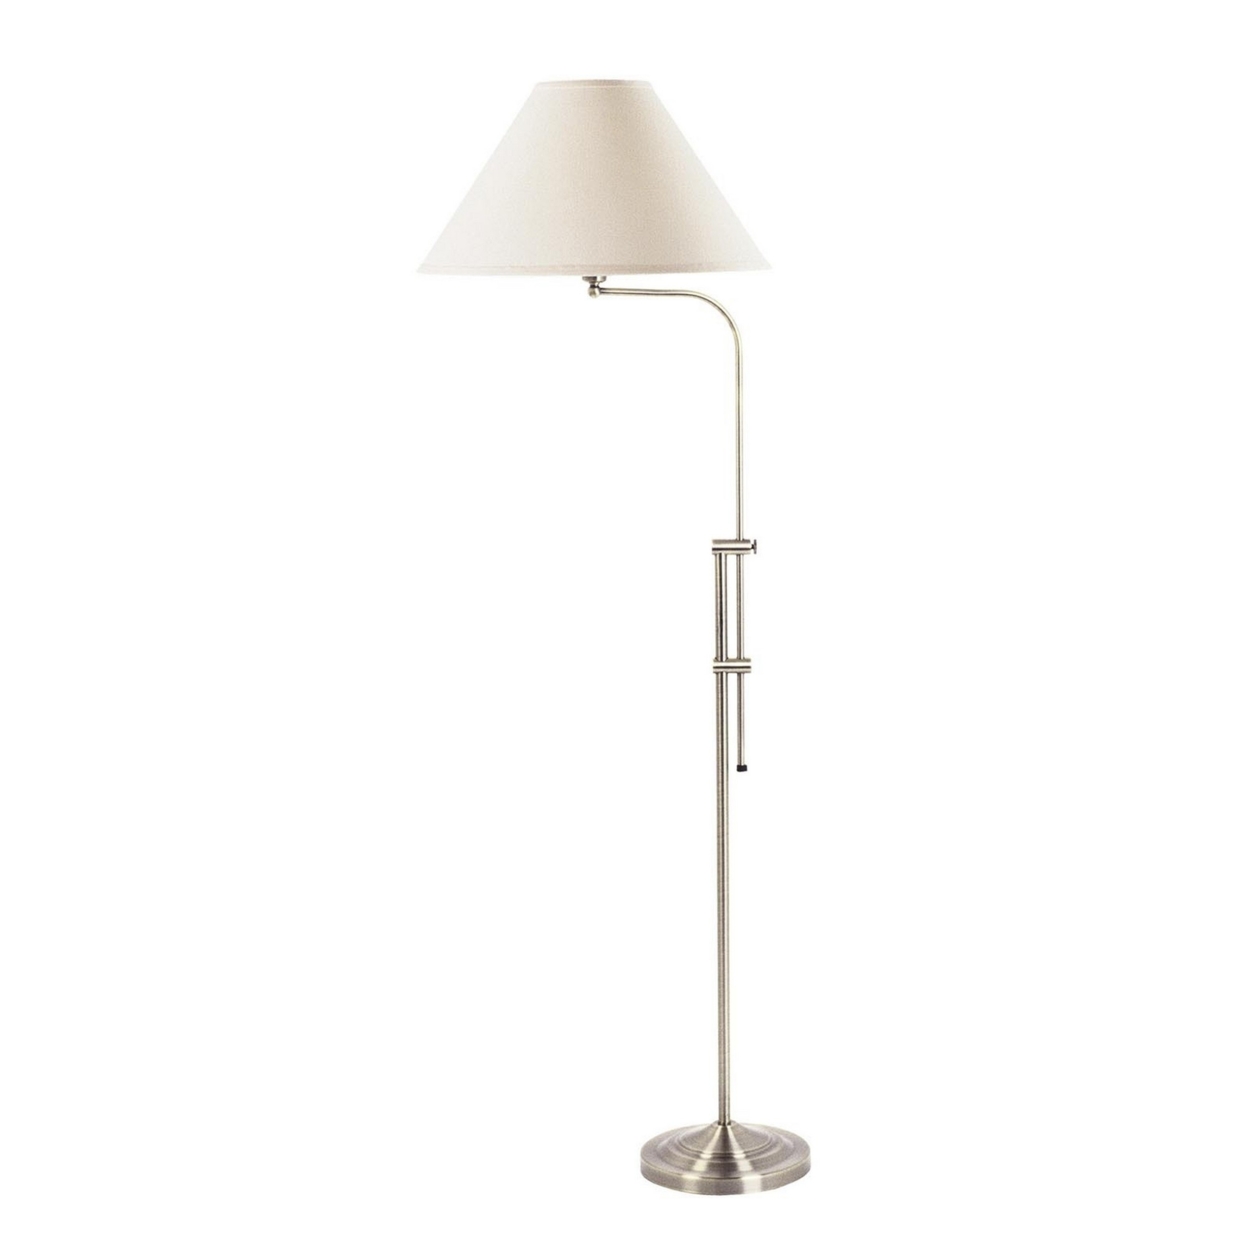 3 Way Metal Floor Lamp With And Adjustable Height Mechanism, Silver- Saltoro Sherpi